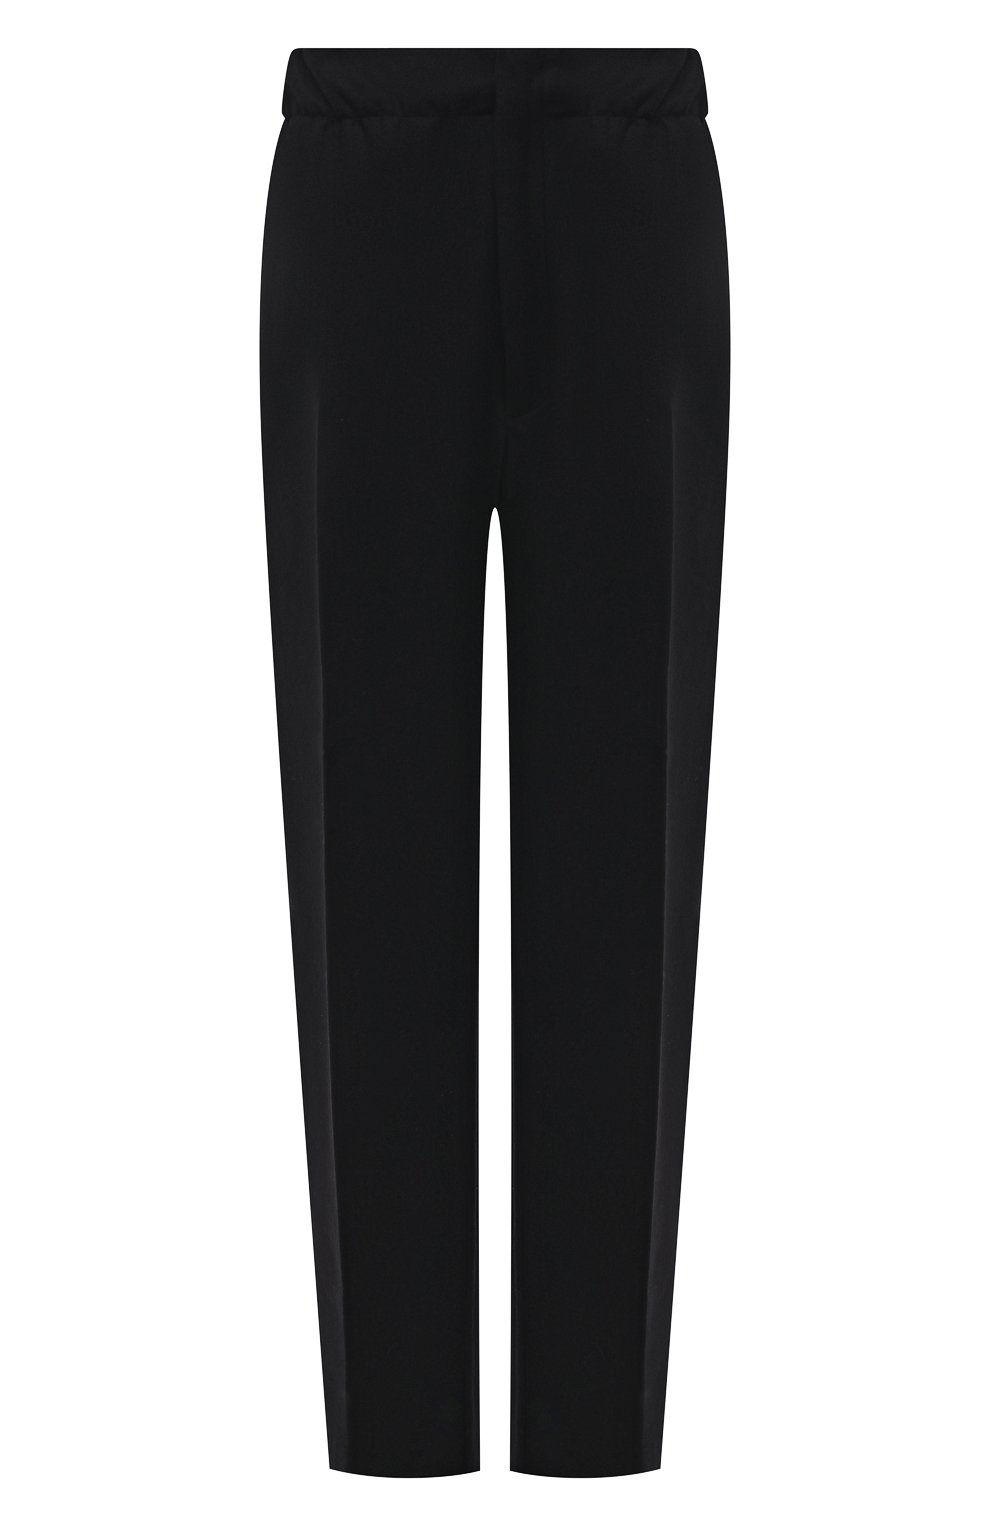 Мужские шерстяные брюки ZEGNA COUTURE черного цвета, арт. 287005/630SNX | Фото 1 (Материал внешний: Шерсть; Длина (брюки, джинсы): Стандартные; Случай: Повседневный; Стили: Минимализм, Кэжуэл)